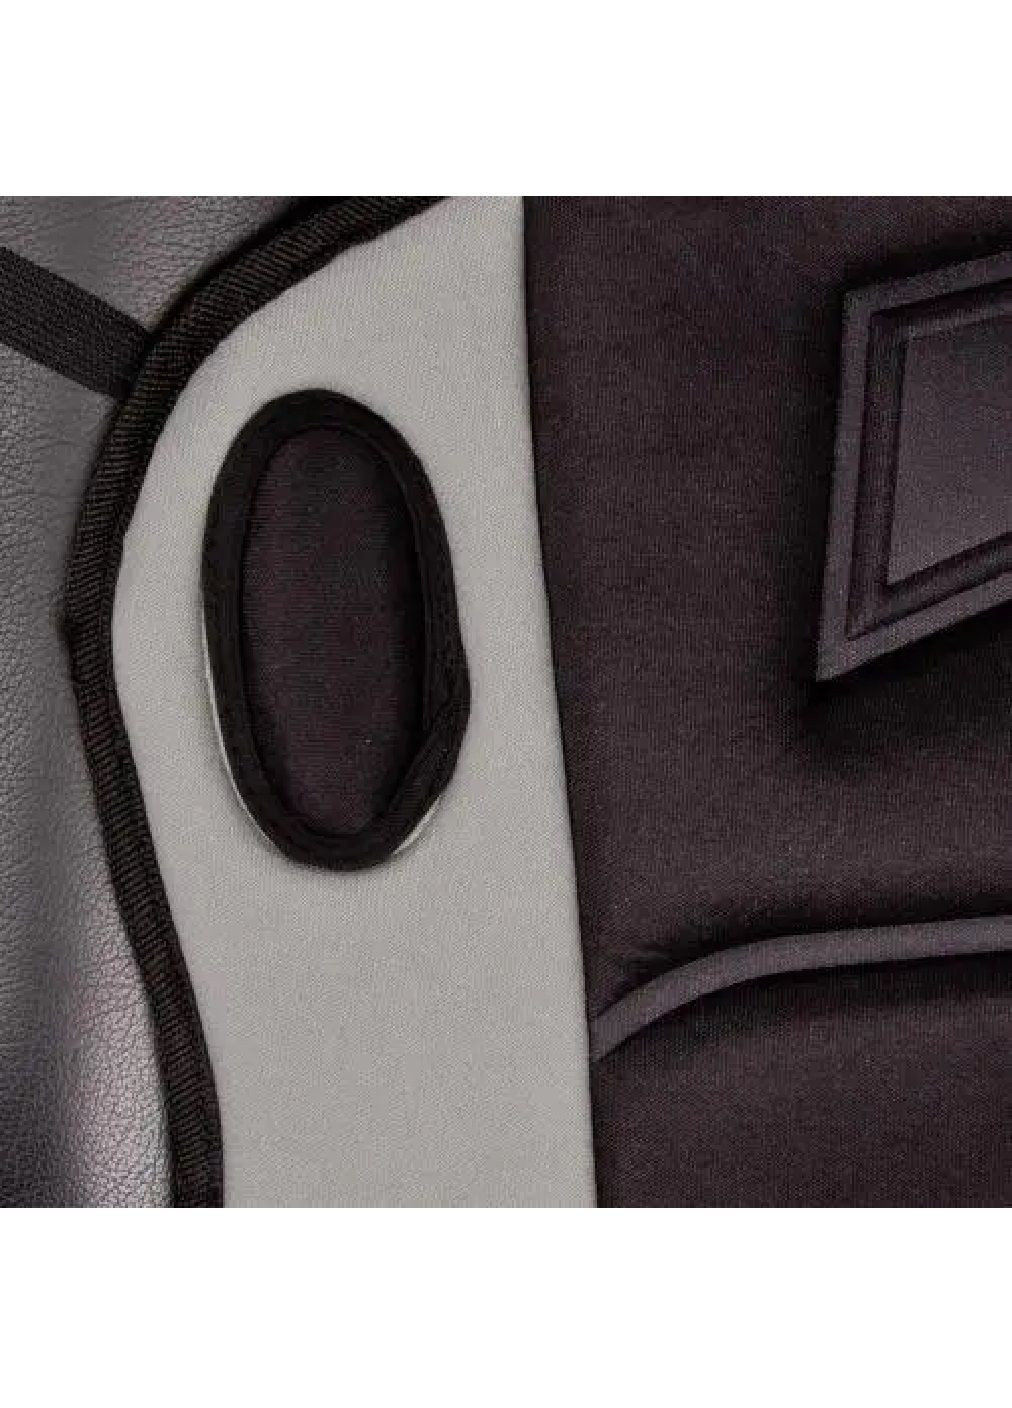 Чехол накидка на сидение авто с подогревом сидений переключателем от прикуривателя 115x49 см (476276-Prob) Серый с черным Unbranded (278052286)